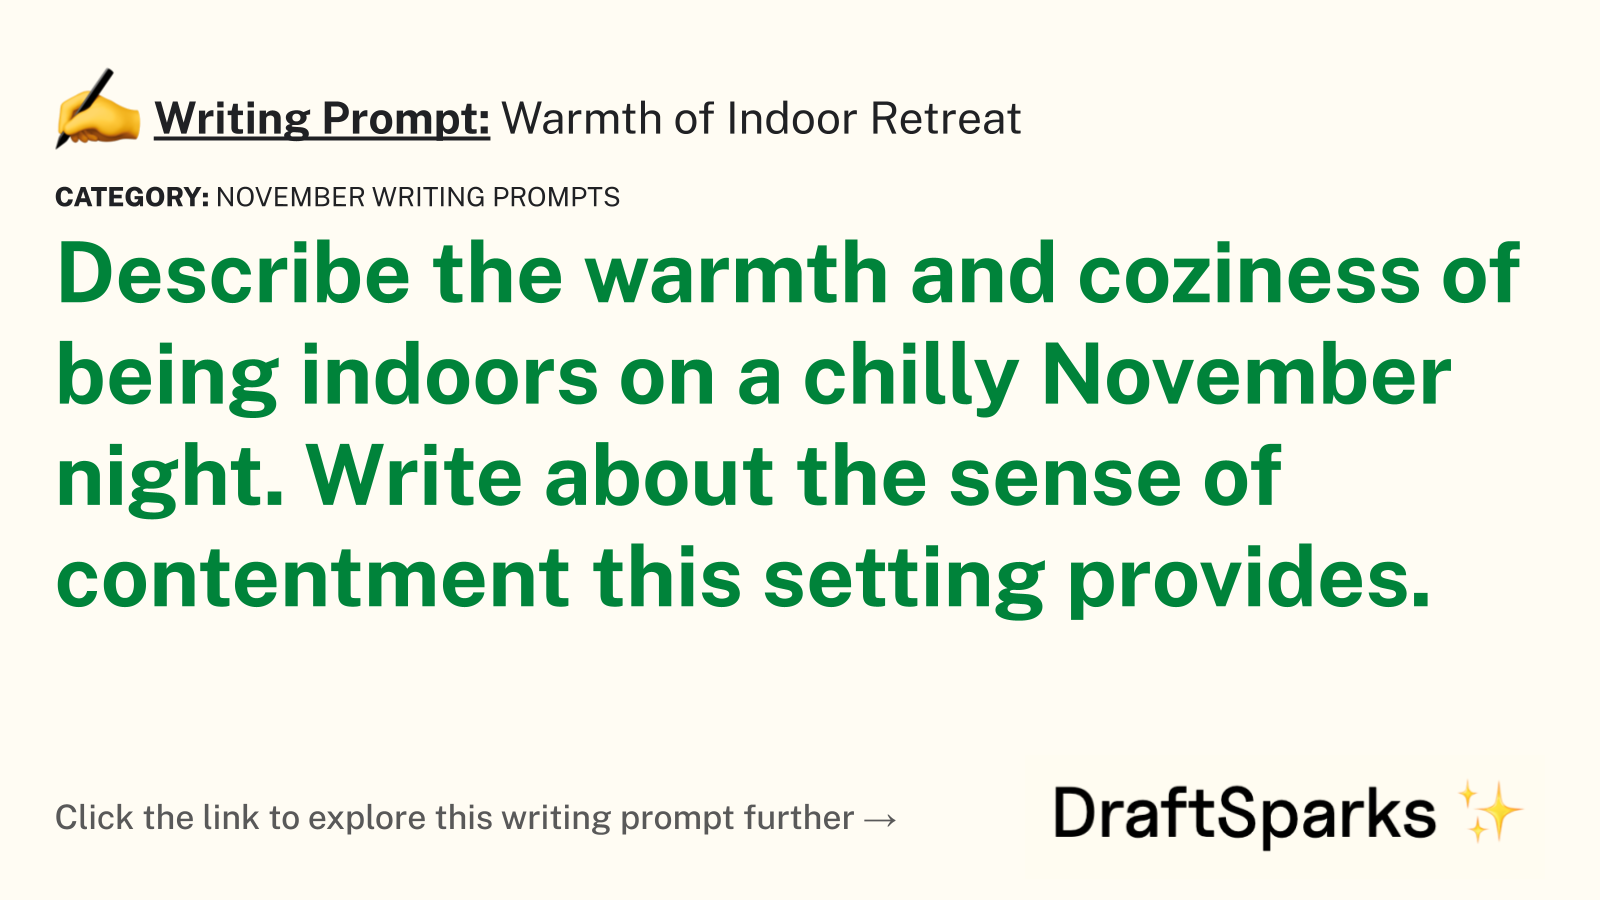 Warmth of Indoor Retreat